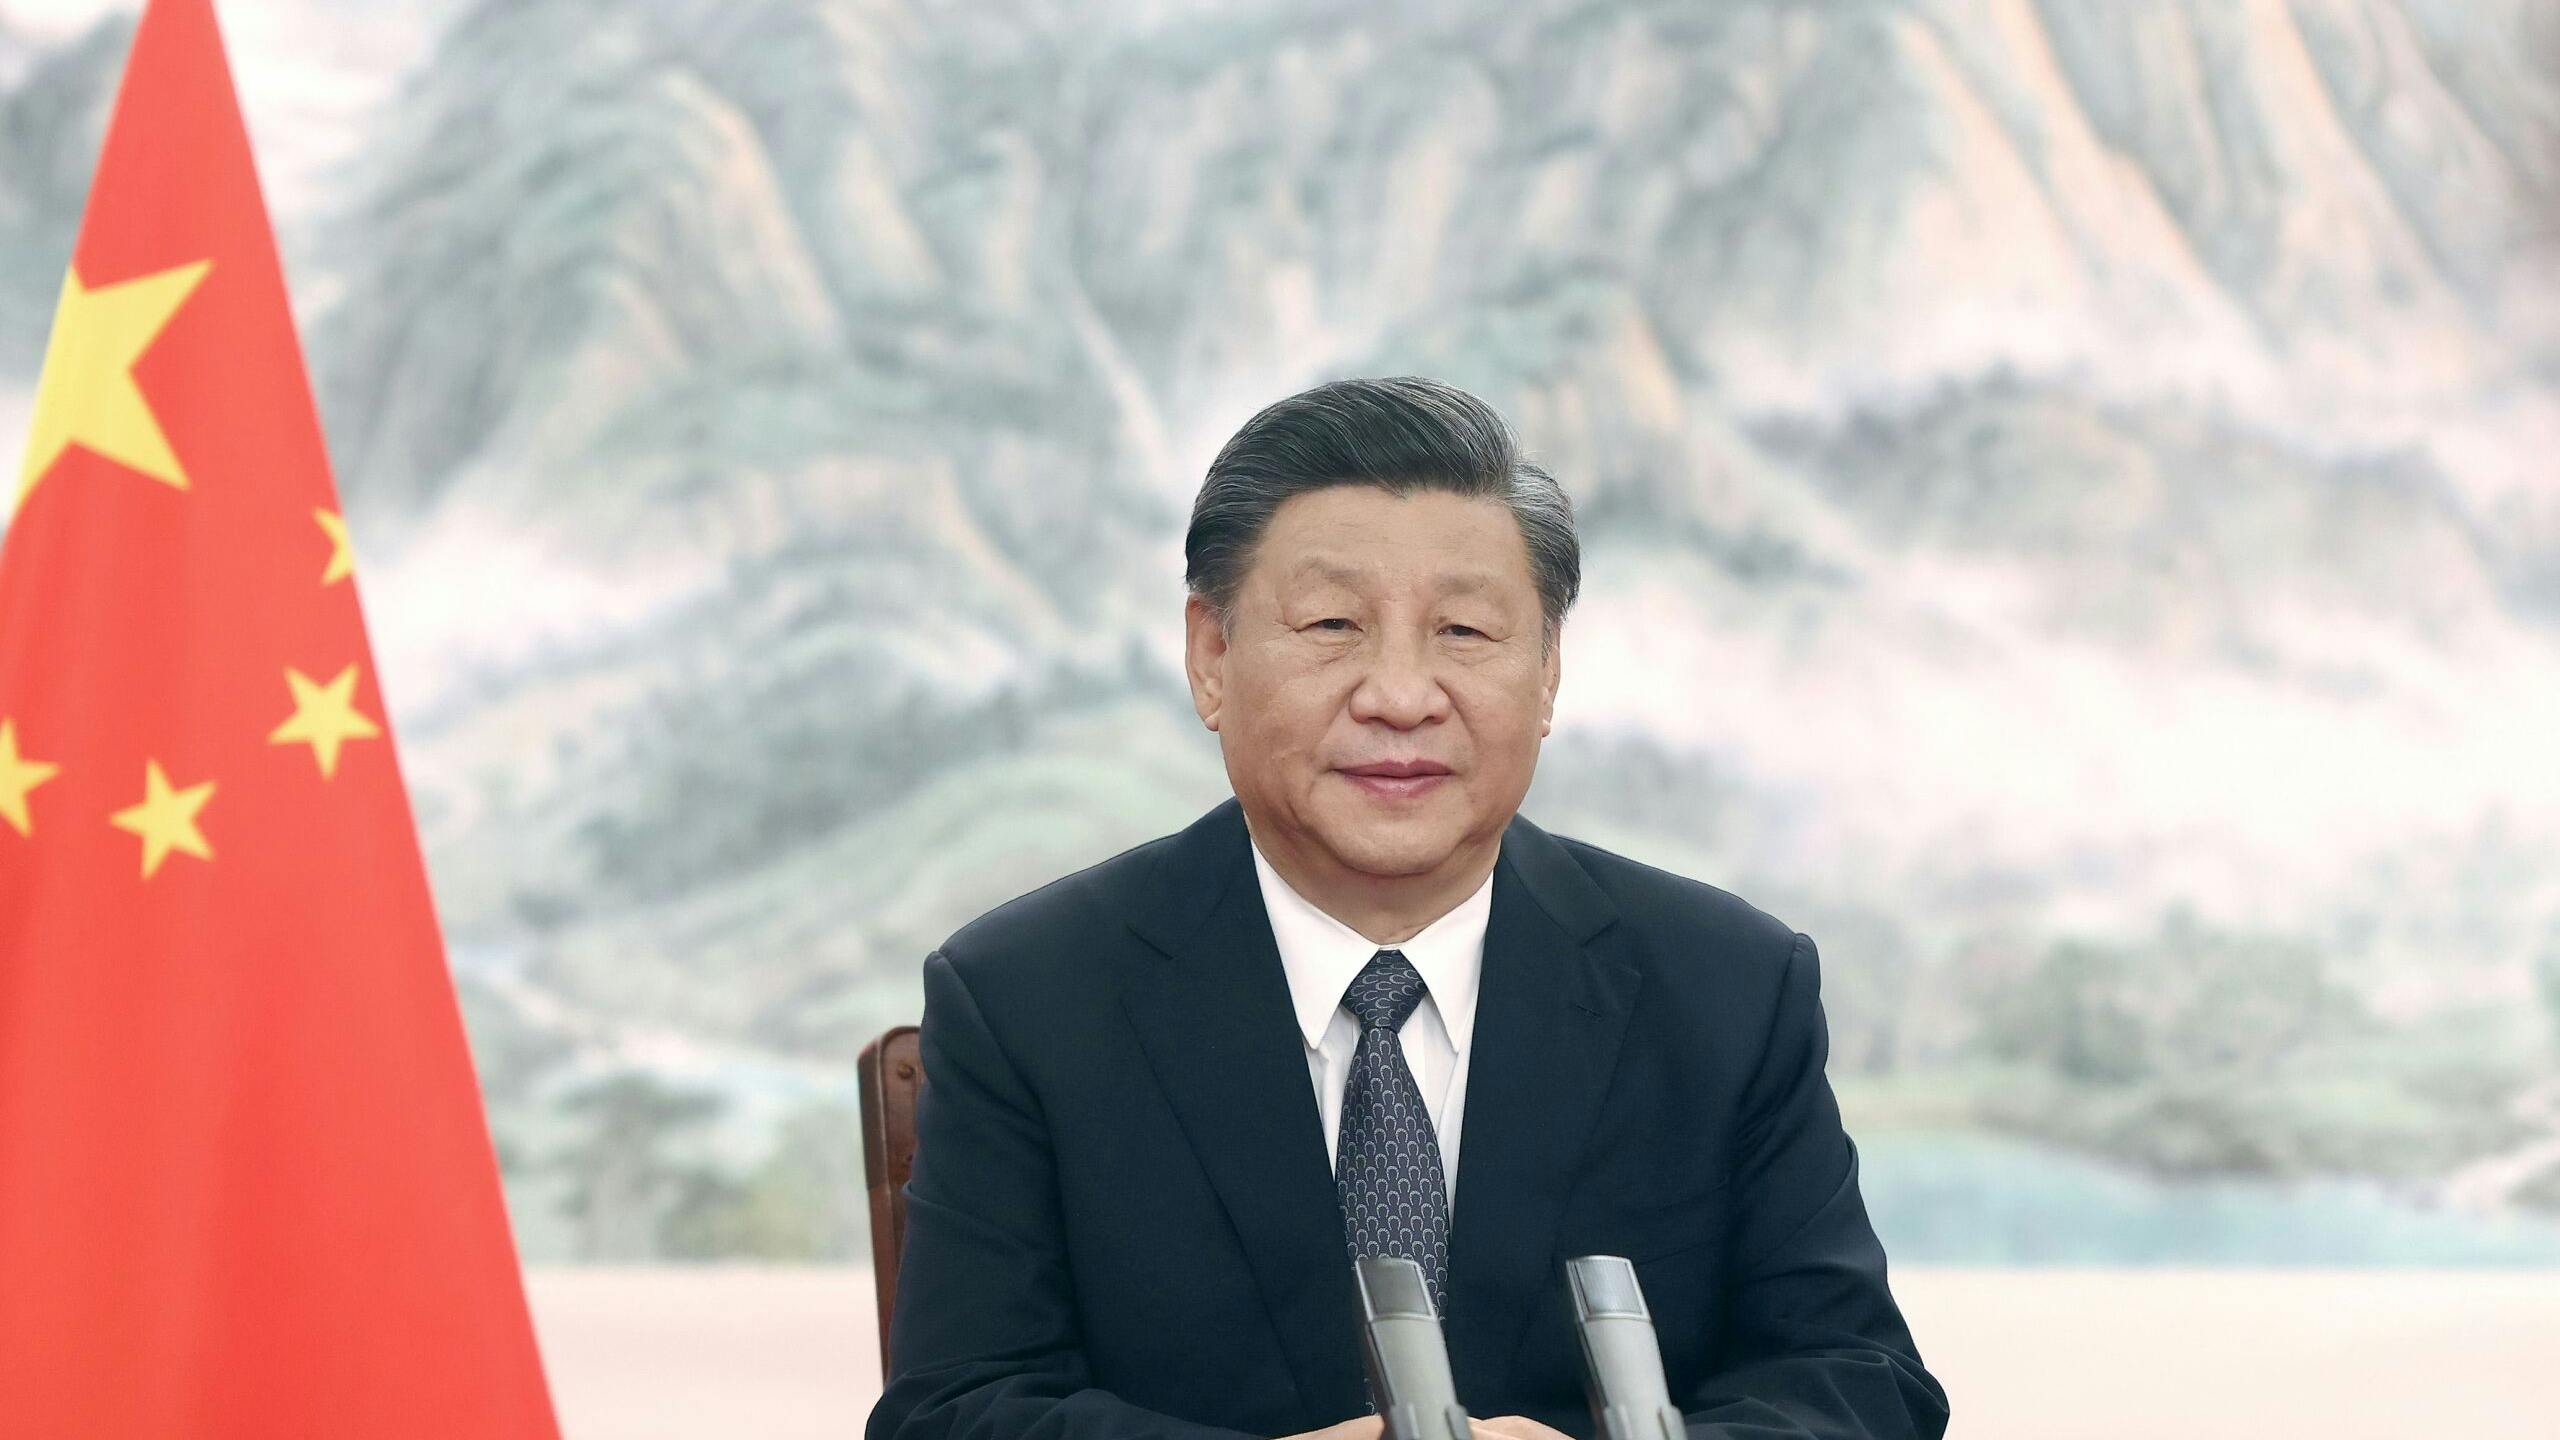 De Chinese president Xi Jinping spreekt tijdens het Internationale Economische Forum in Sint Petersburg